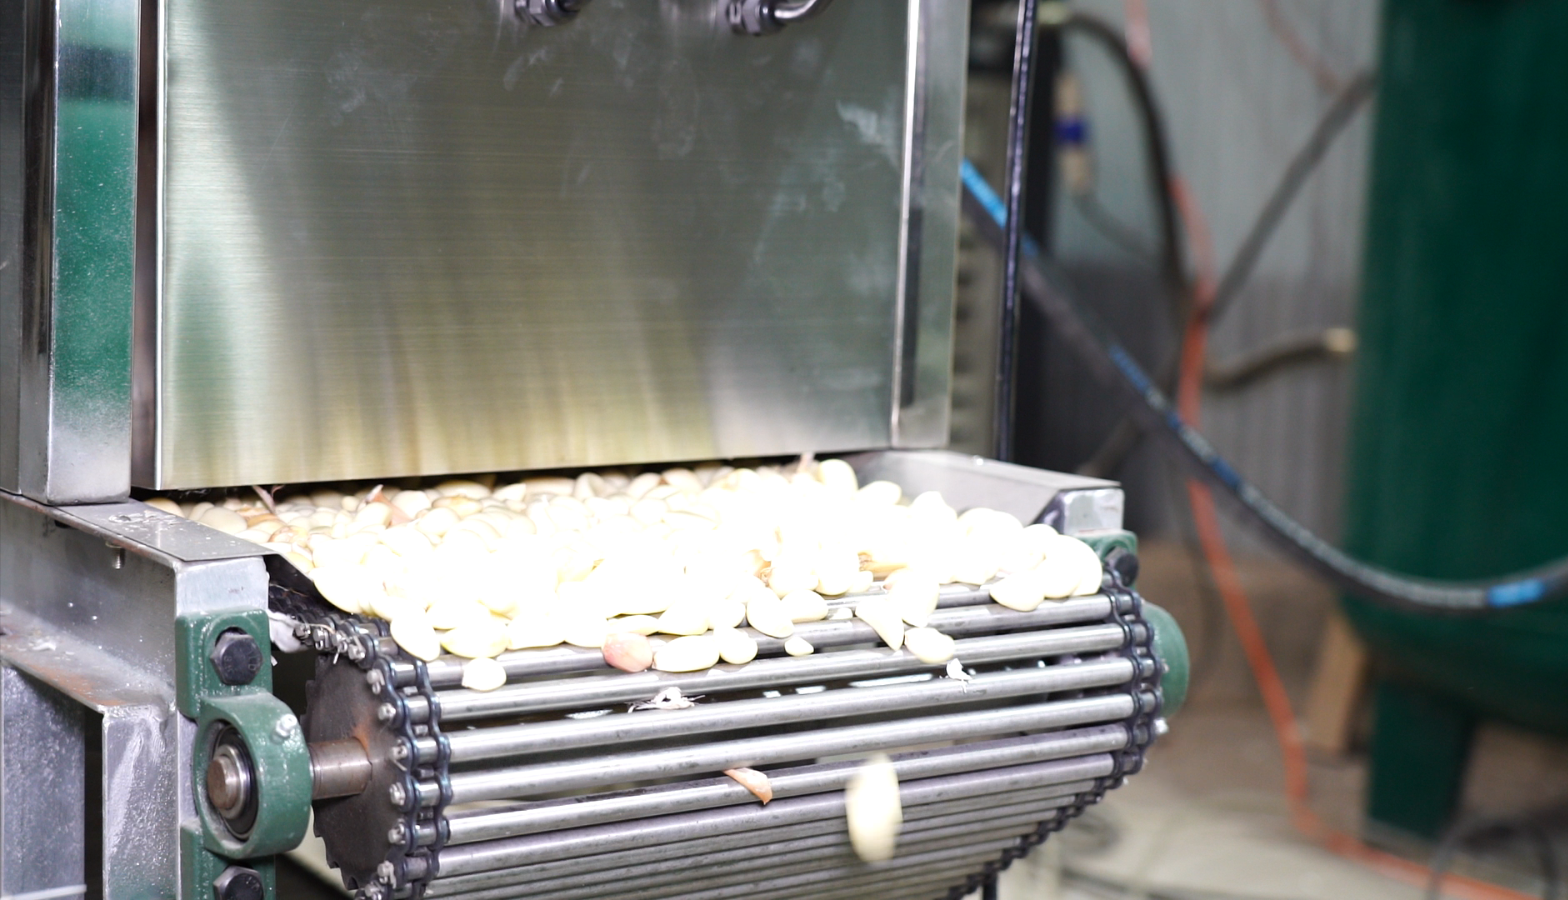 New Chian type Garlic Peeling Machine high capcity – WM machinery